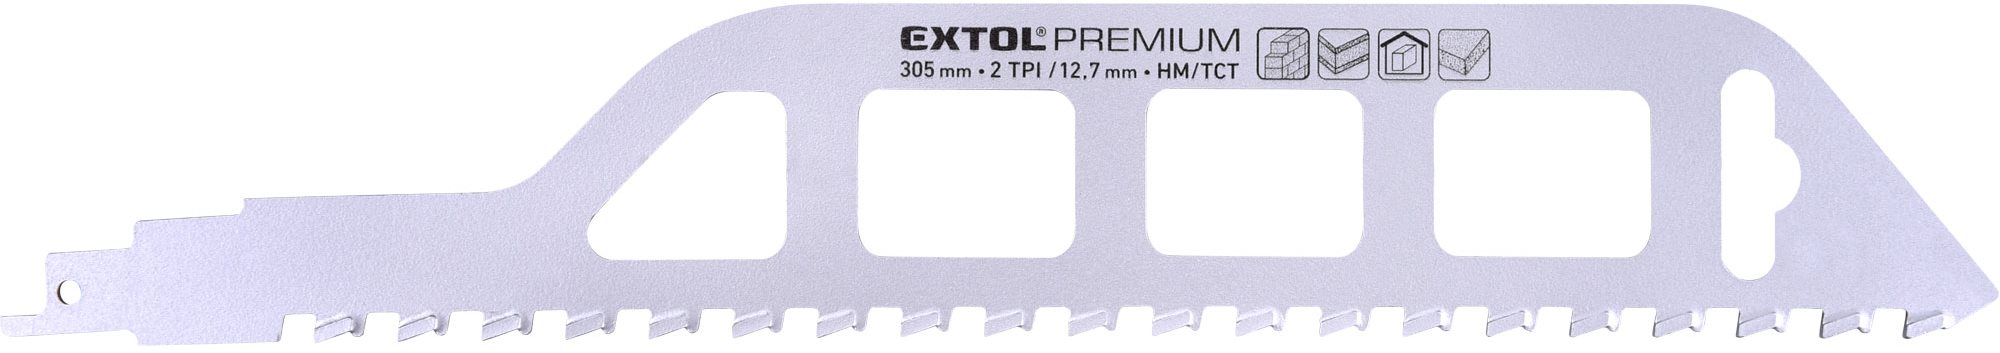 Extol Premium 8806300